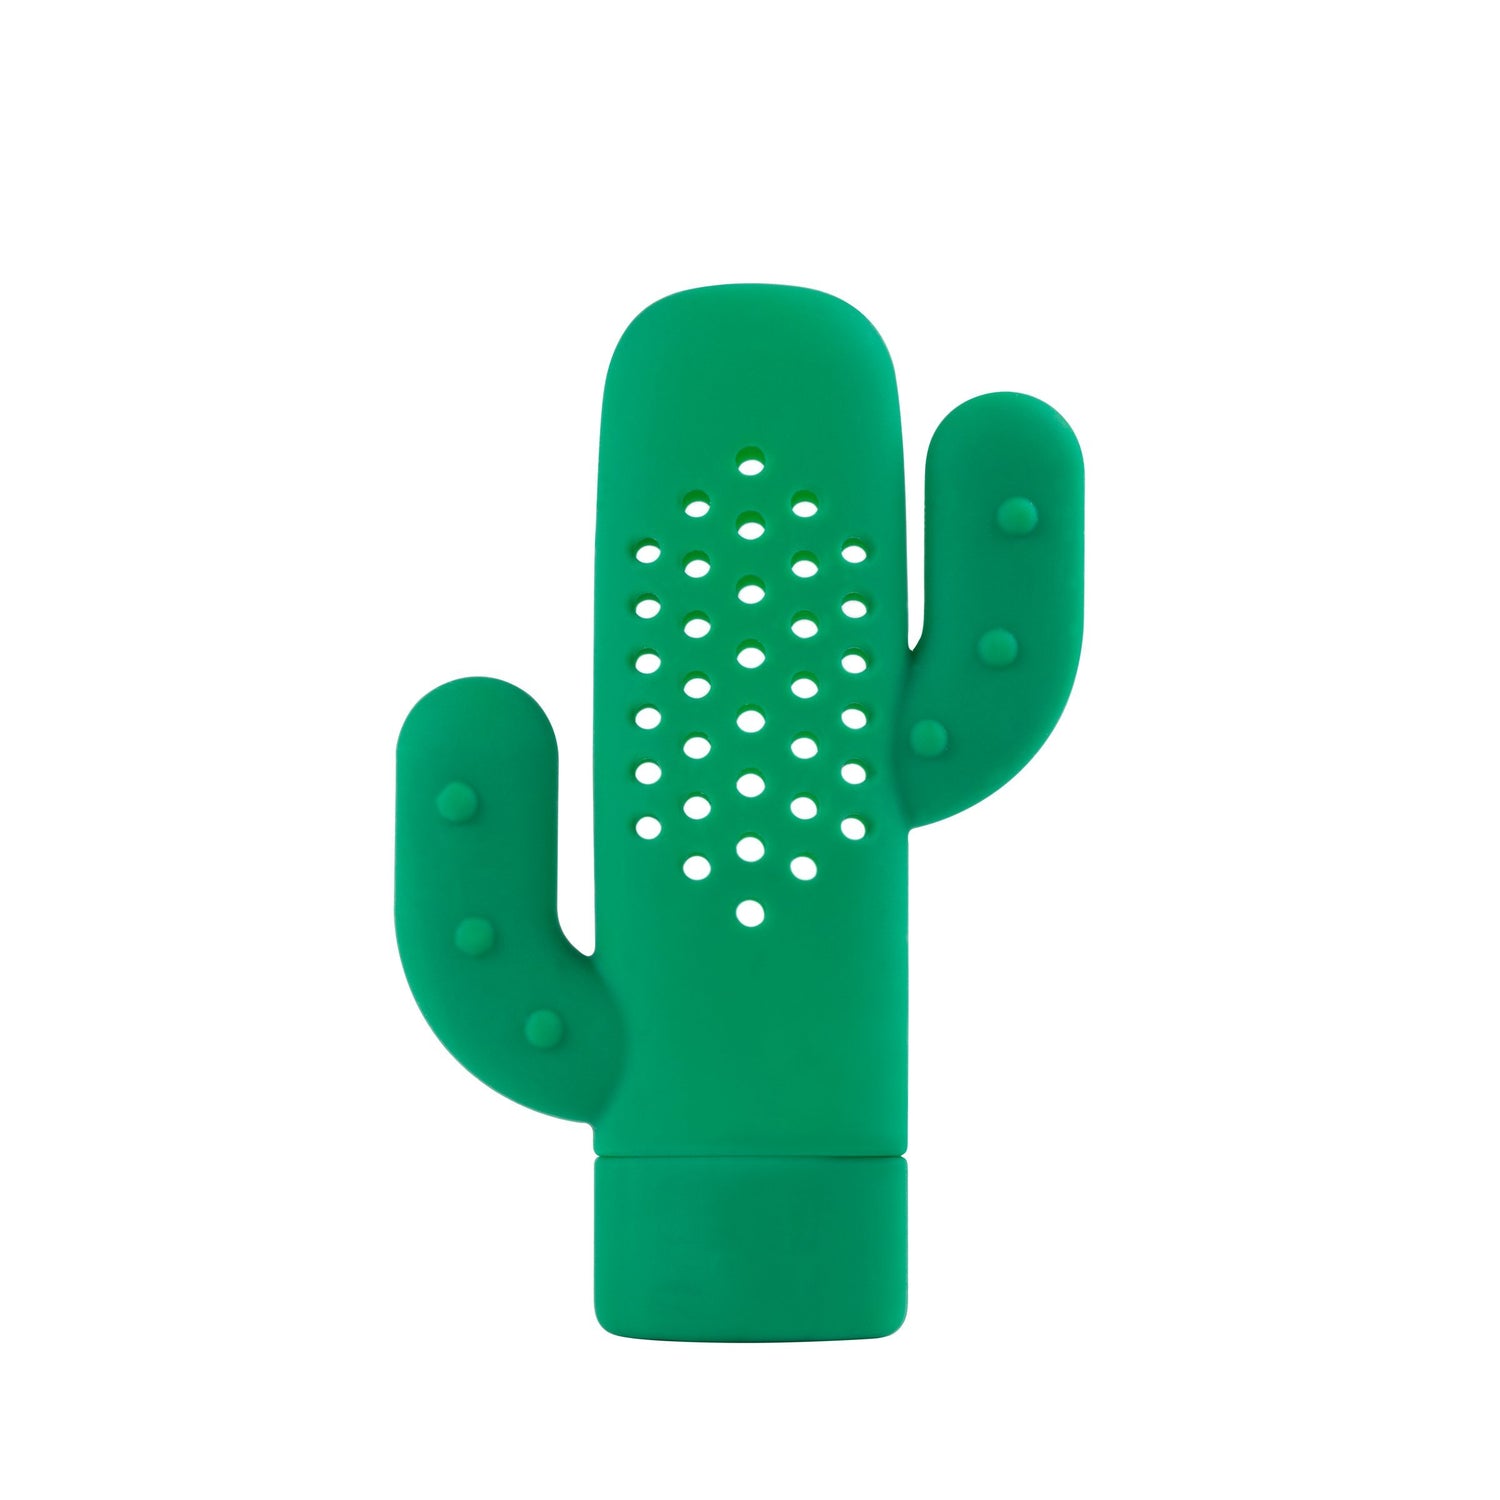 Cactus kruid infuus